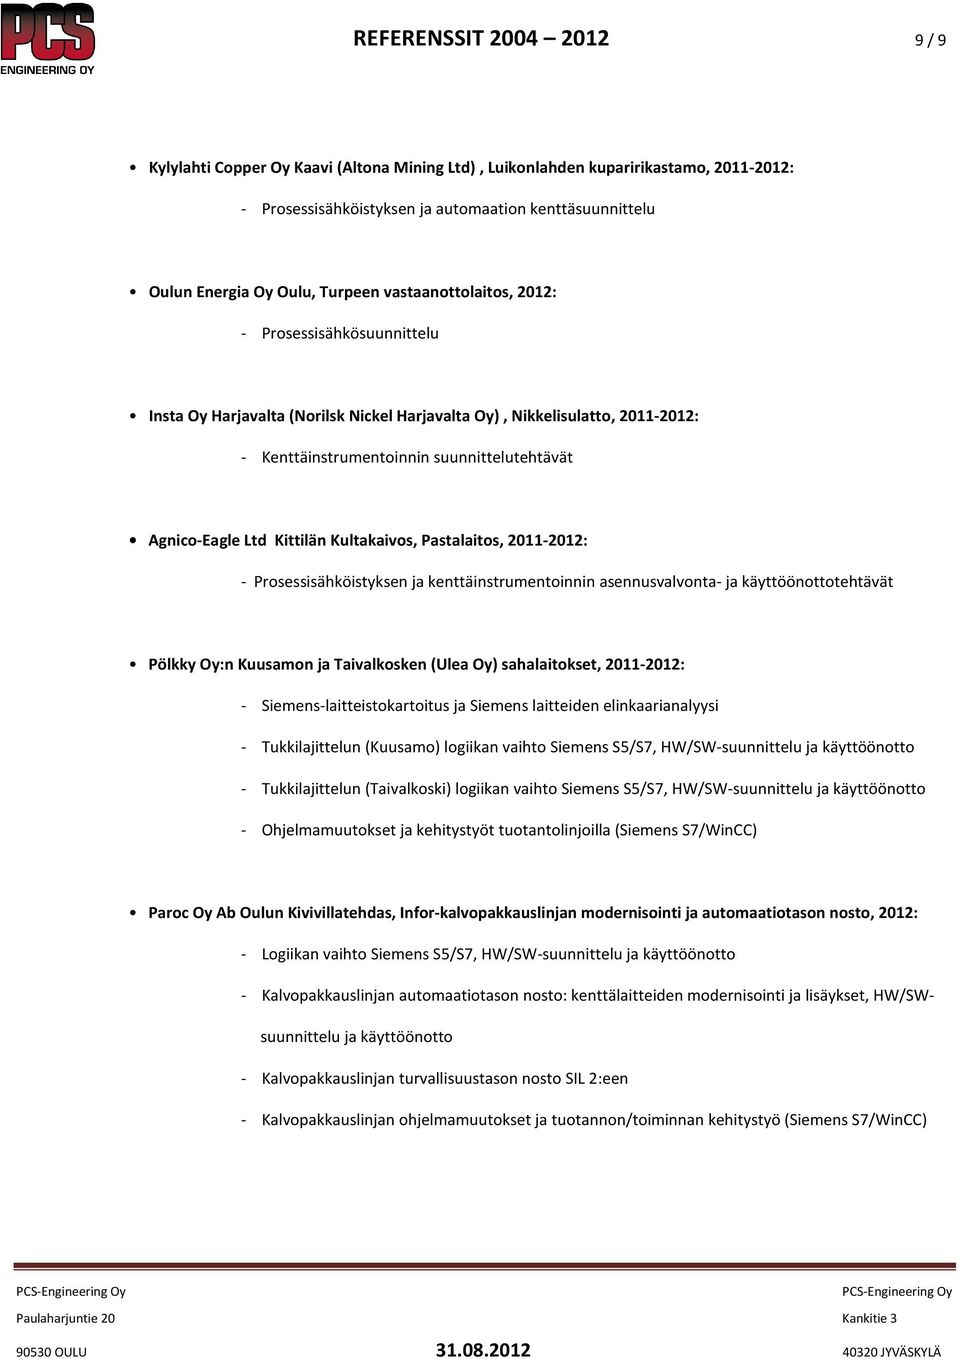 Ltd Kittilän Kultakaivos, Pastalaitos, 2011-2012: - Prosessisähköistyksen ja kenttäinstrumentoinnin asennusvalvonta- ja käyttöönottotehtävät Pölkky Oy:n Kuusamon ja Taivalkosken (Ulea Oy)